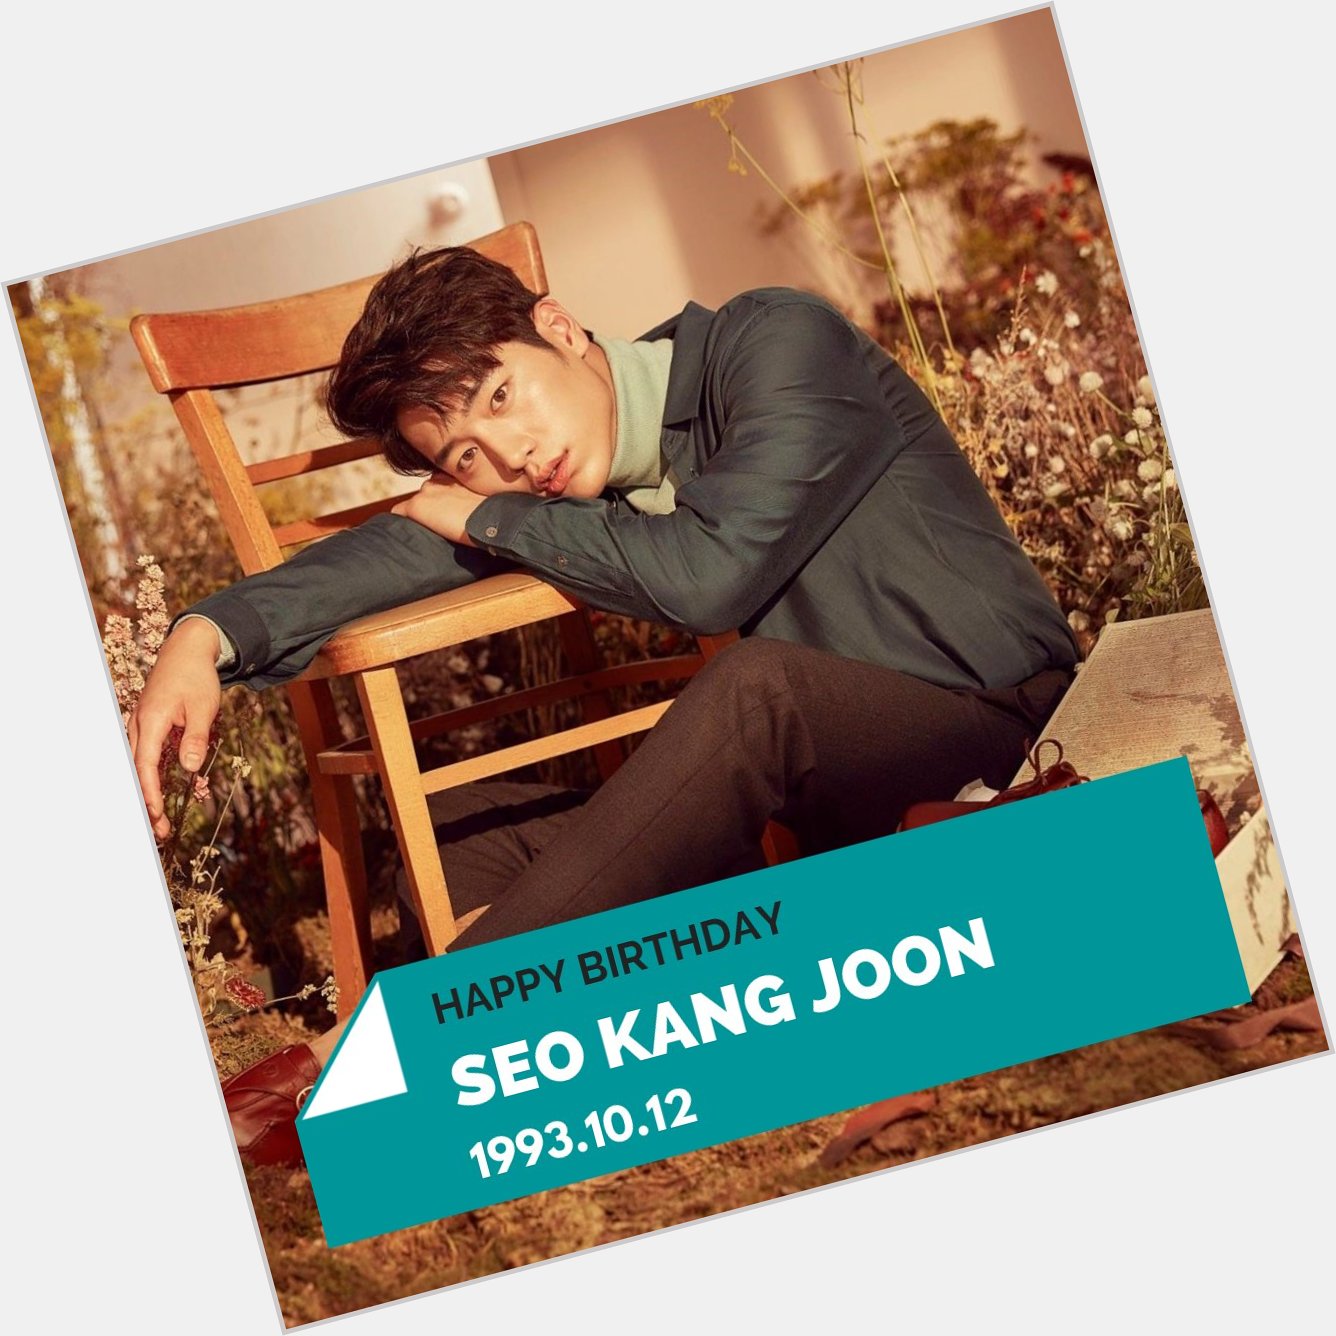 Happy birthday to Seo Kang Joon!  